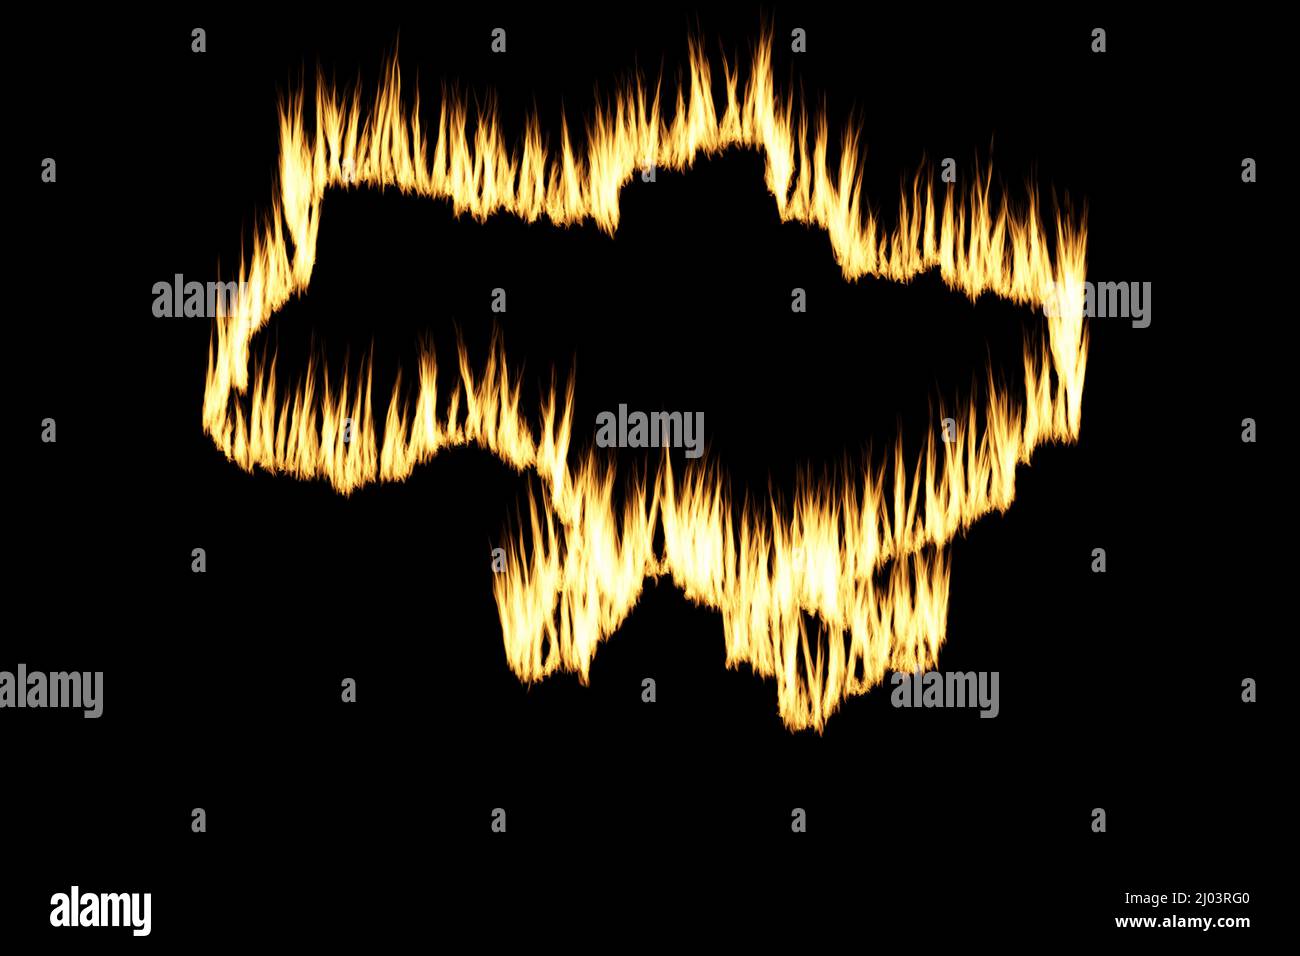 Ukraine Land Grenze Karte Umriss aus Burning Flames Effekt auf schwarzem Hintergrund gemacht Stockfoto